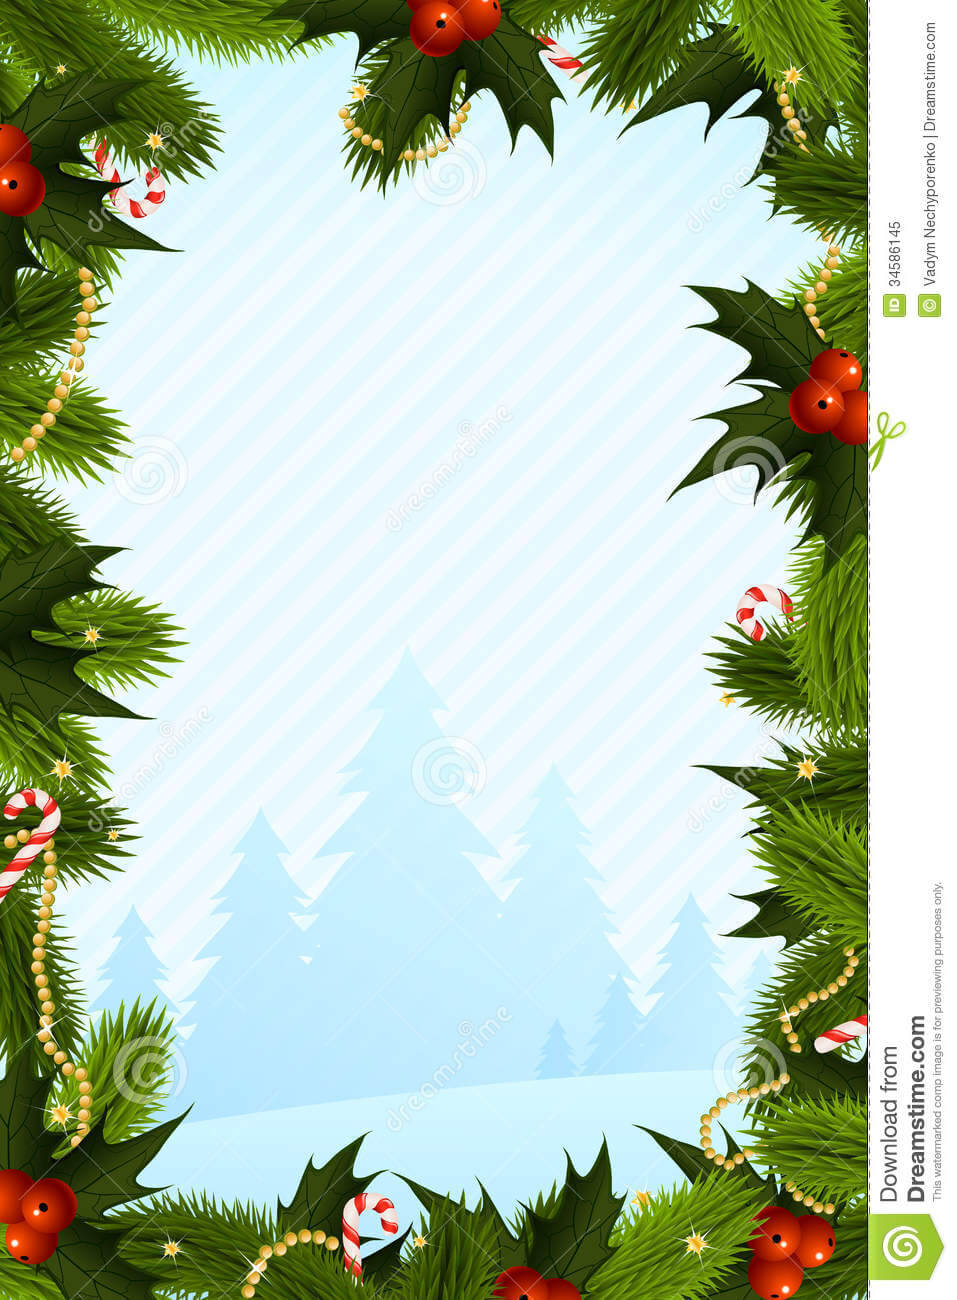 022 Christmas Photo Card Templates Free Printable Holiday For Christmas Photo Cards Templates Free Downloads